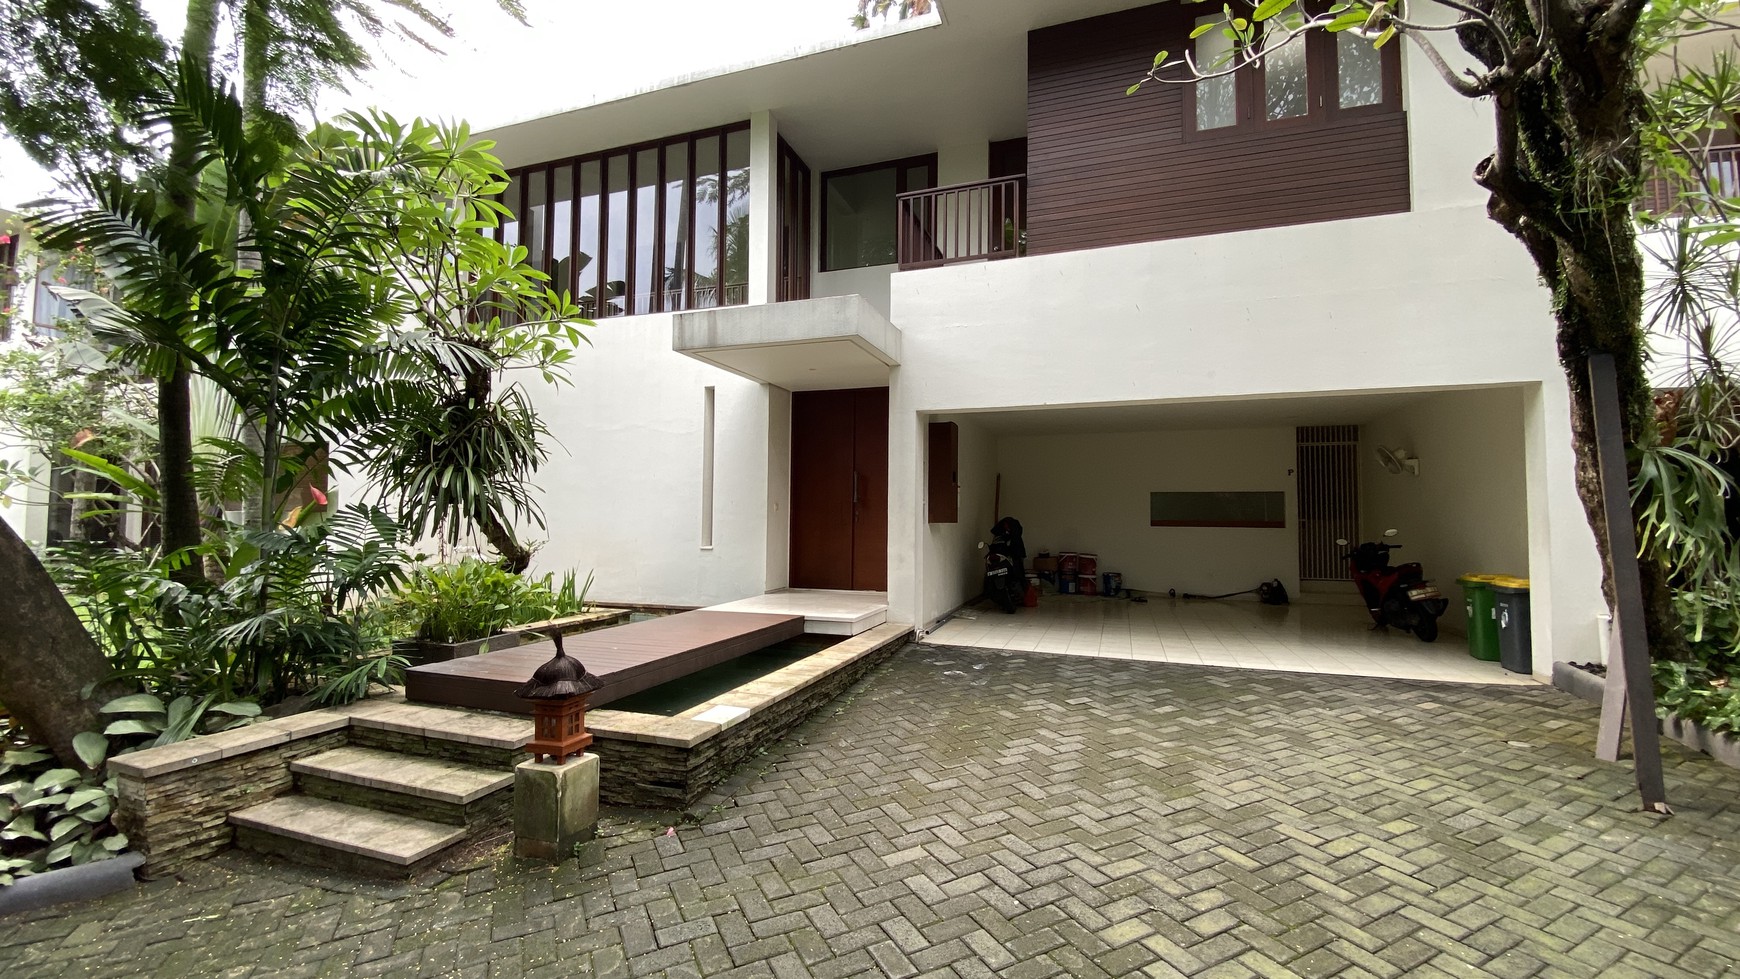 Beautiful house bali style at cipete, jakarta selatan